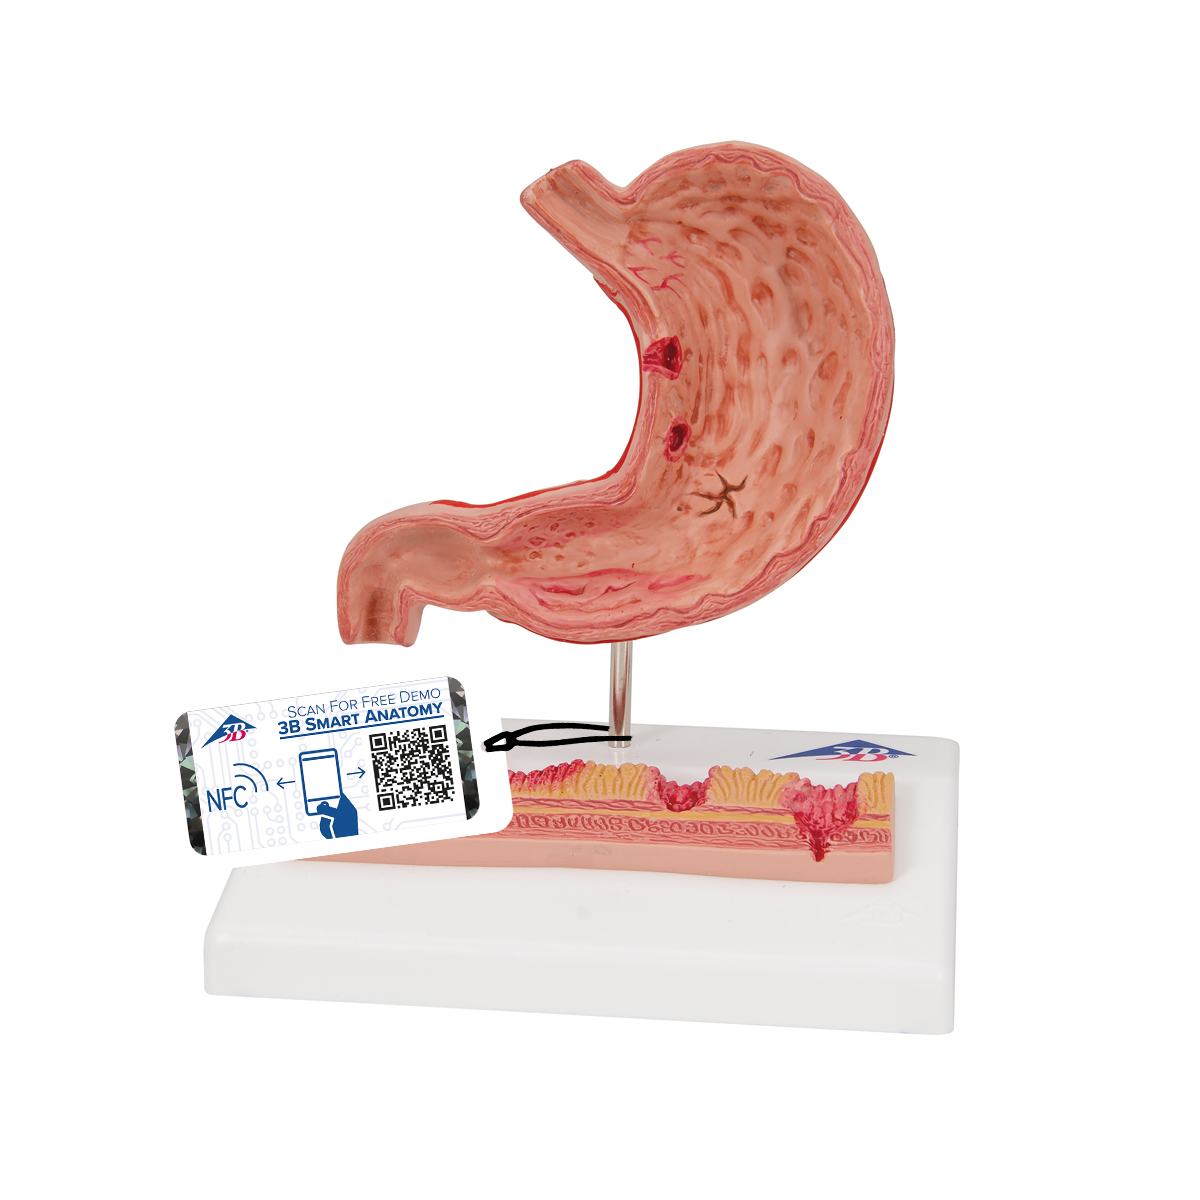 Magenmodell mit Magengeschwüren - 3B Smart Anatomy, Bestellnummer 1000304, K17, 3B Scientific